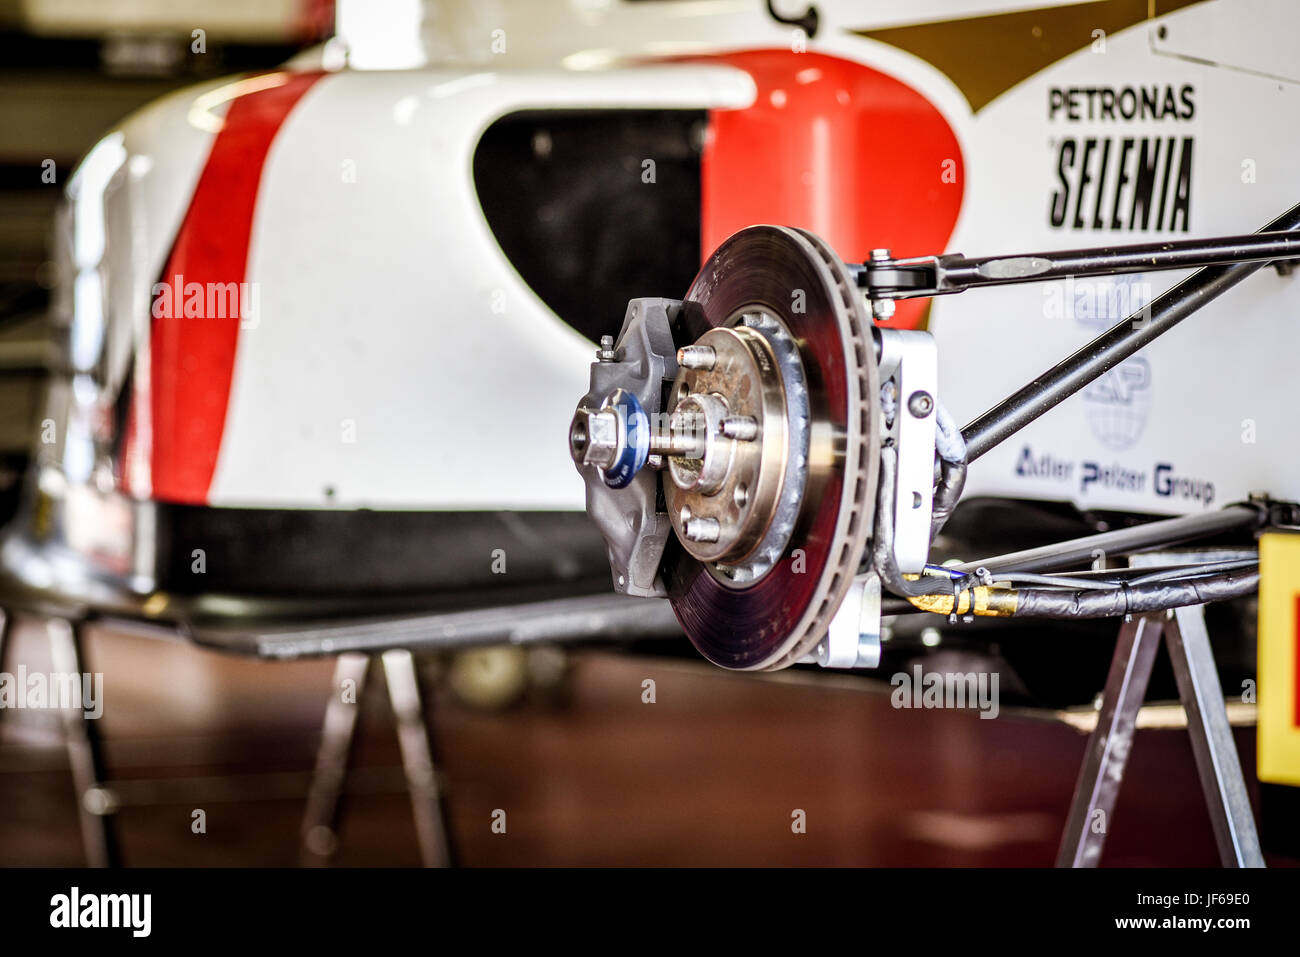 El campeonato italiano de Fórmula 4, Prema Power Team coche en taller de boxes, eje de transmisión y el detalle de la pastilla de freno Foto de stock